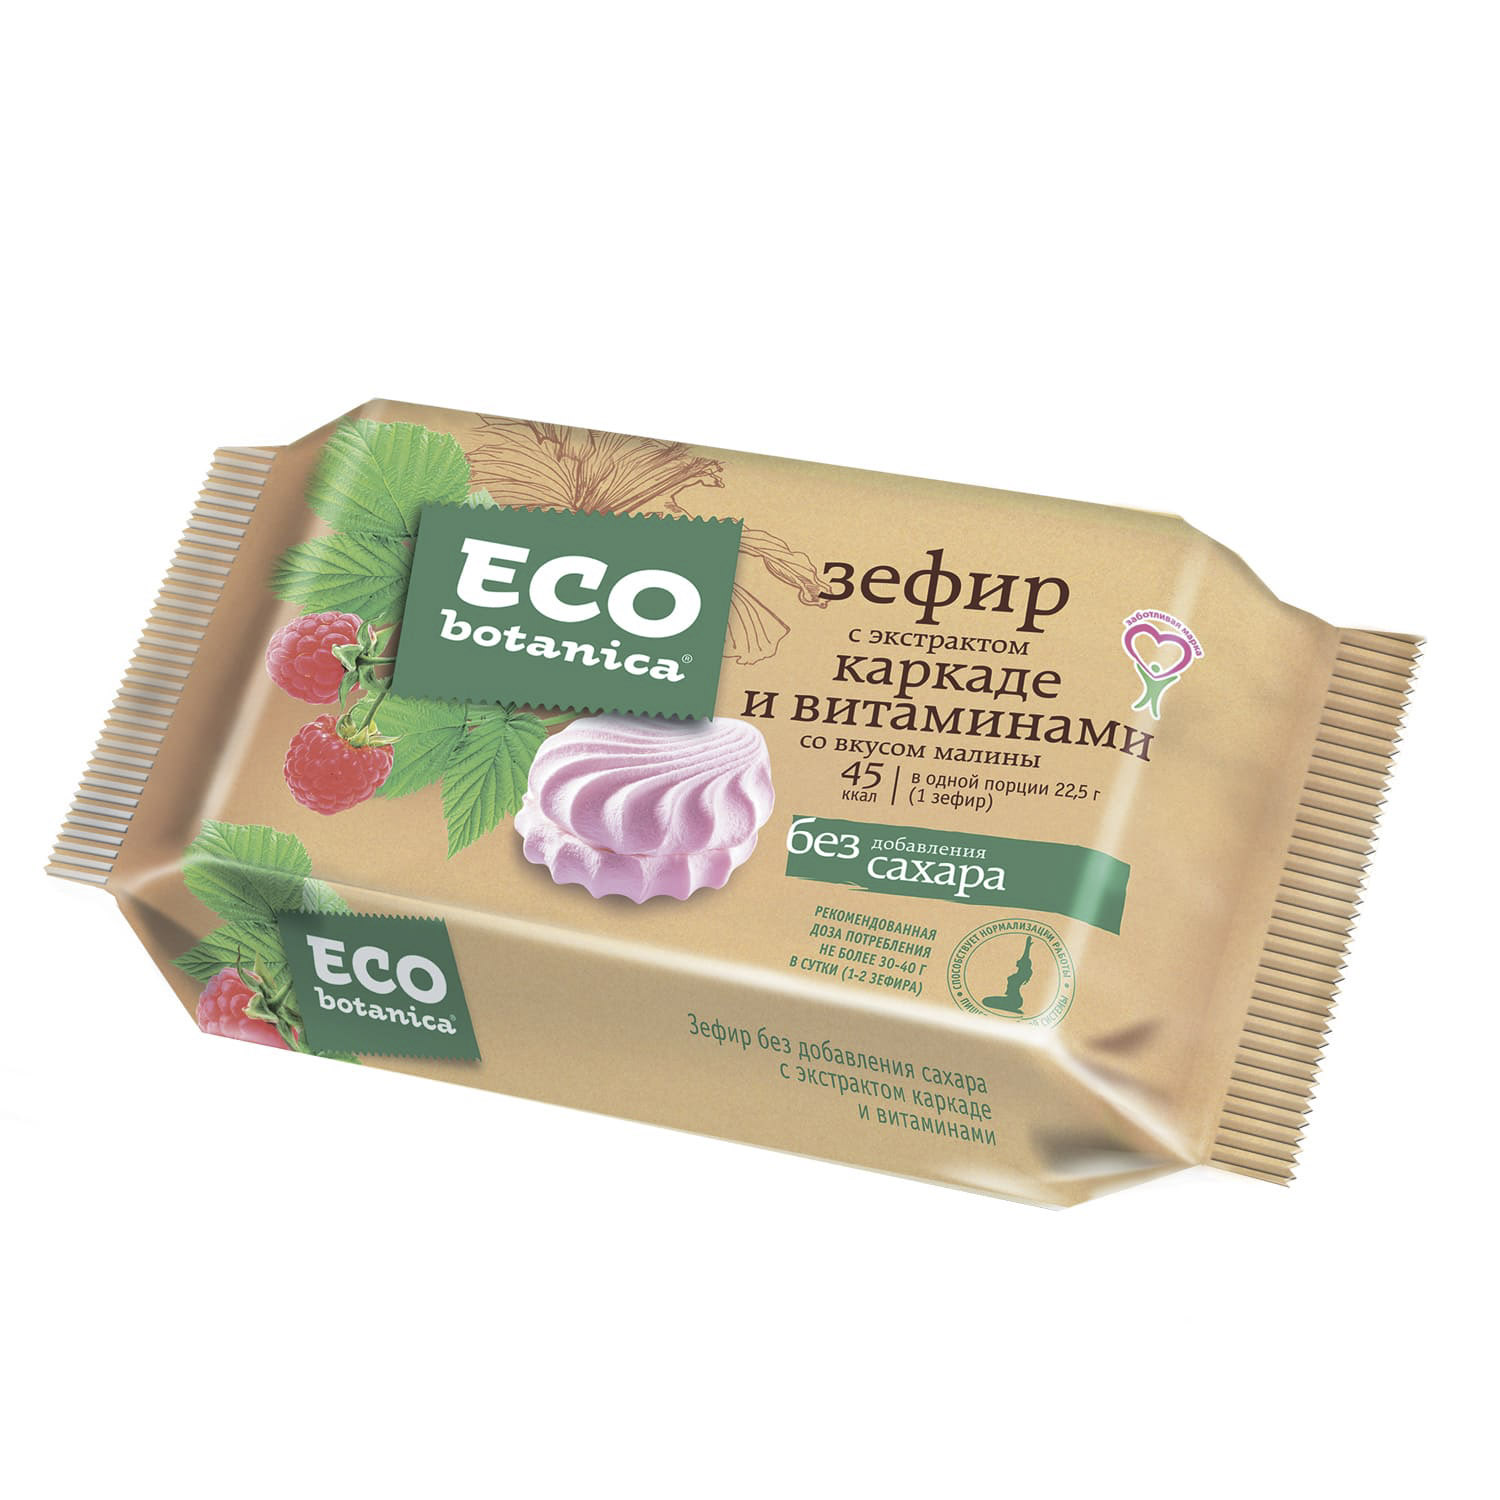 зефир eco botanica 250г с ванильным вкусом и витаминами Зефир Eco Botanica с экстрактом каркаде и вкусом малины 135 г